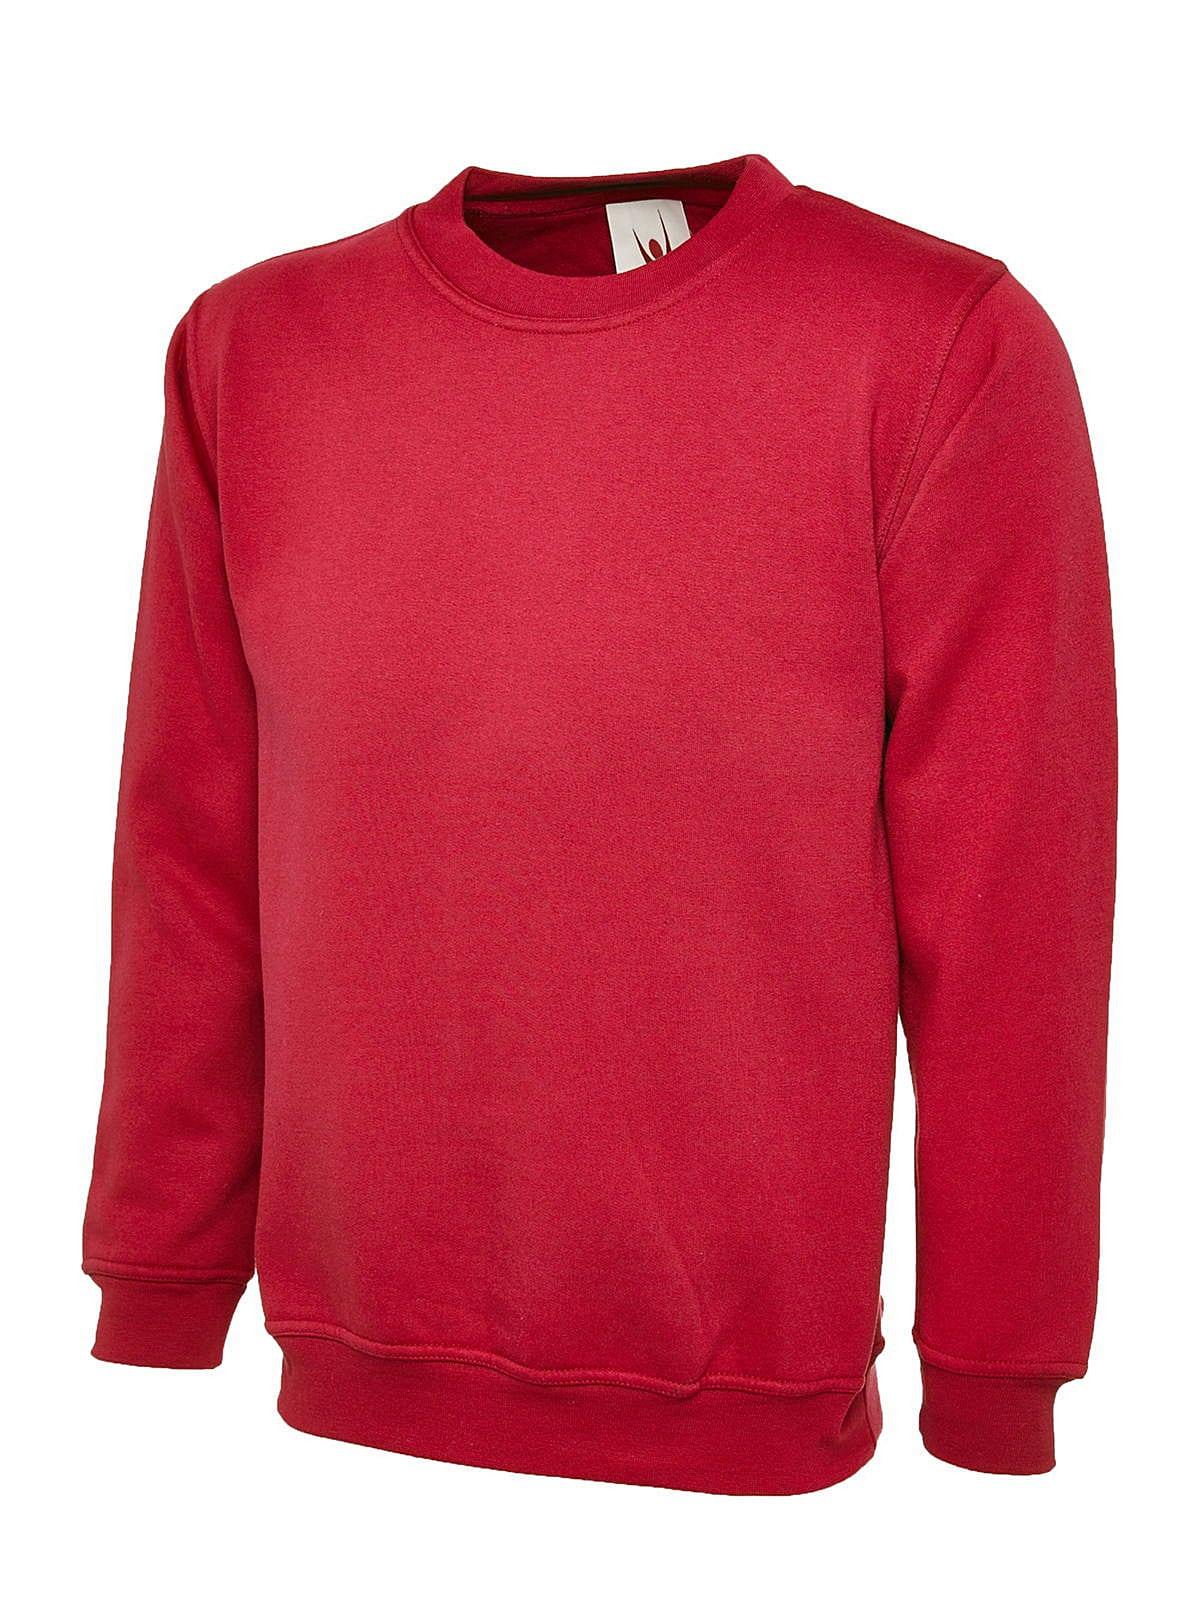 Uneek 300GSM Classic Sweatshirt in Red (Product Code: UC203)